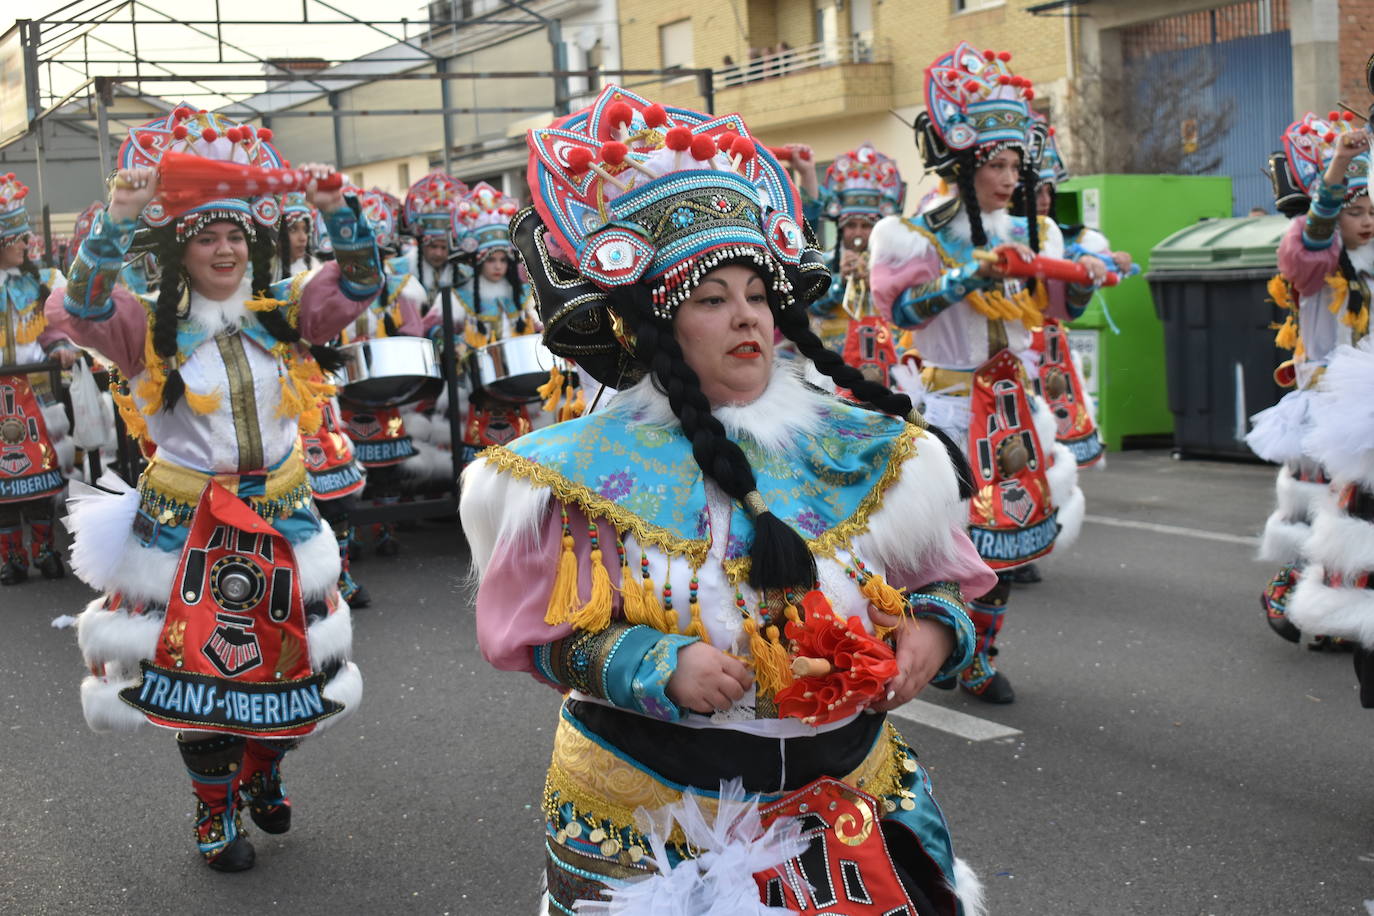 El ritmo, la fantasía y el color del Carnaval llenaron las calles de Miajadas. Más de 700 personas contagiaron su alegría con la mayor diversidad de disfraces y bailes, tanto las comparsas como los participantes individuales y por parejas. Porque sólo el Carnaval es capaz de sacar una sonrisa a todos. 